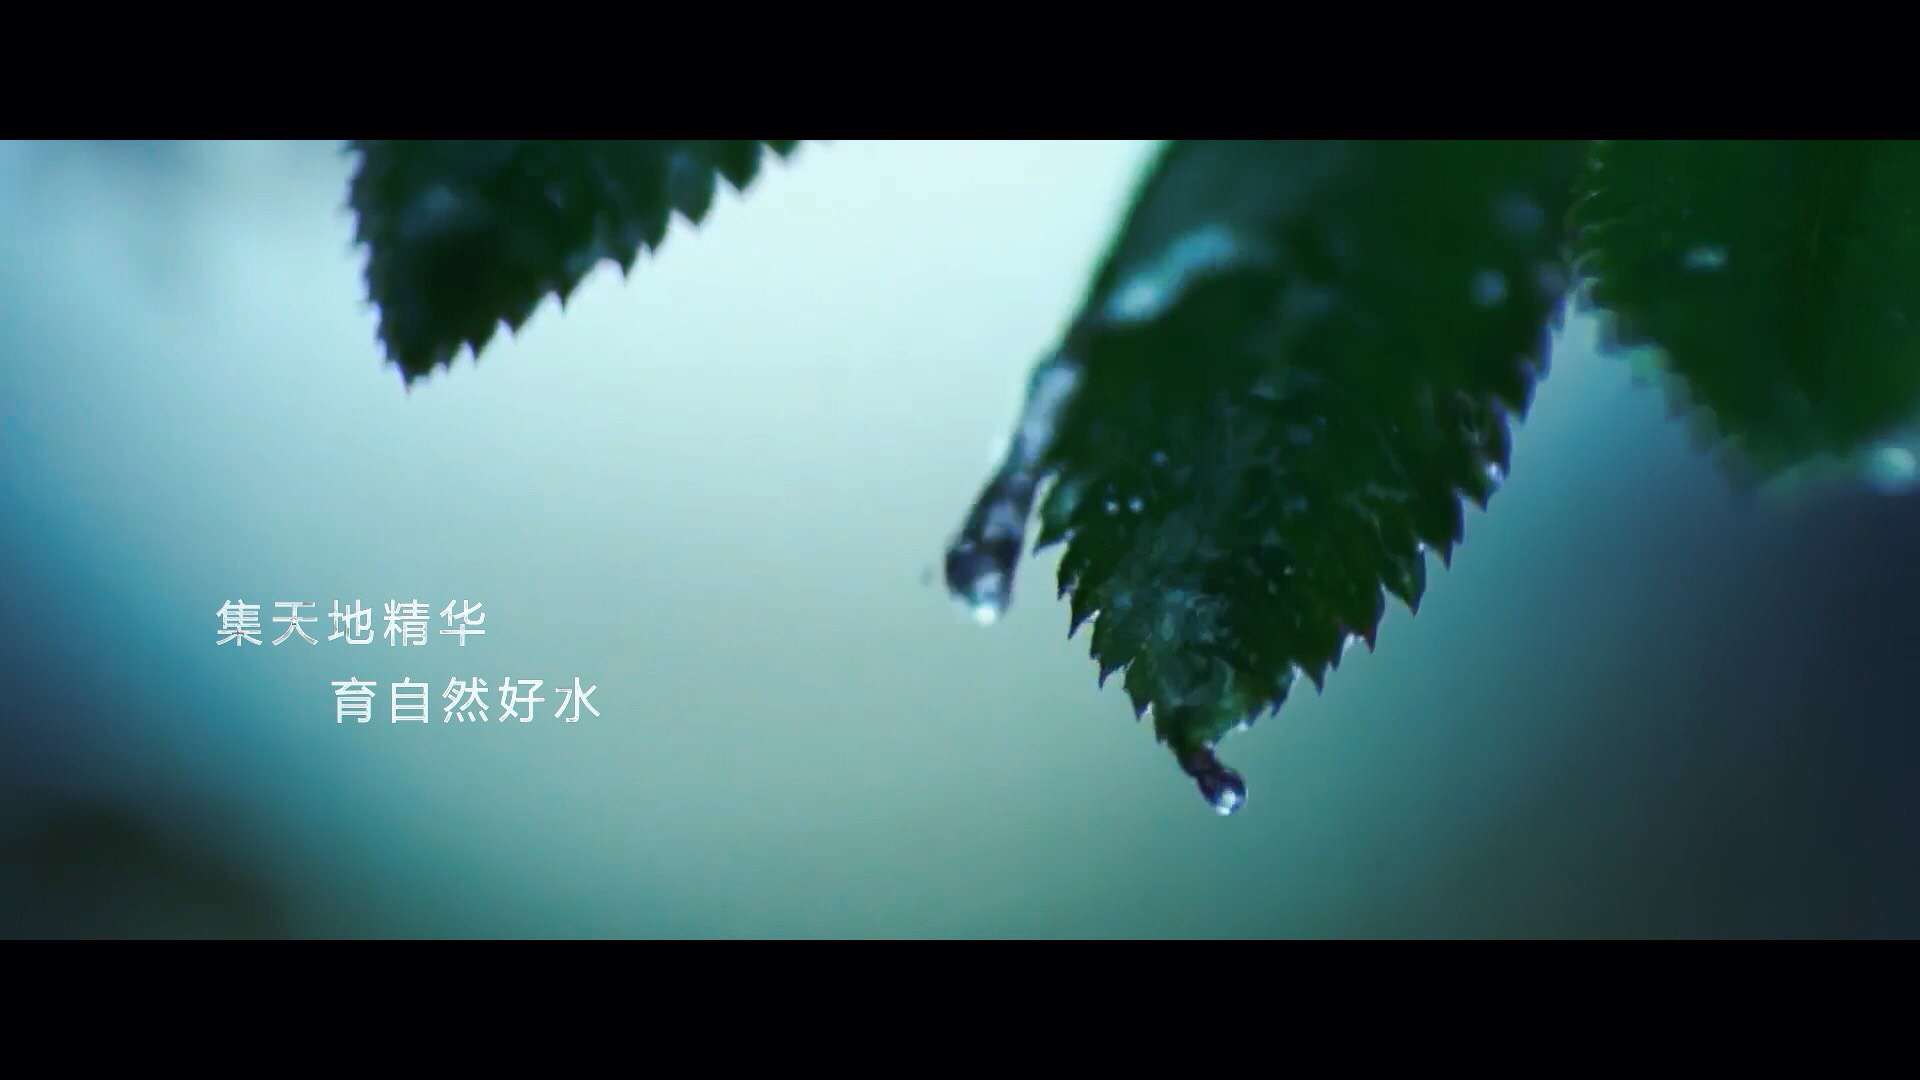 老君山矿泉水广告片